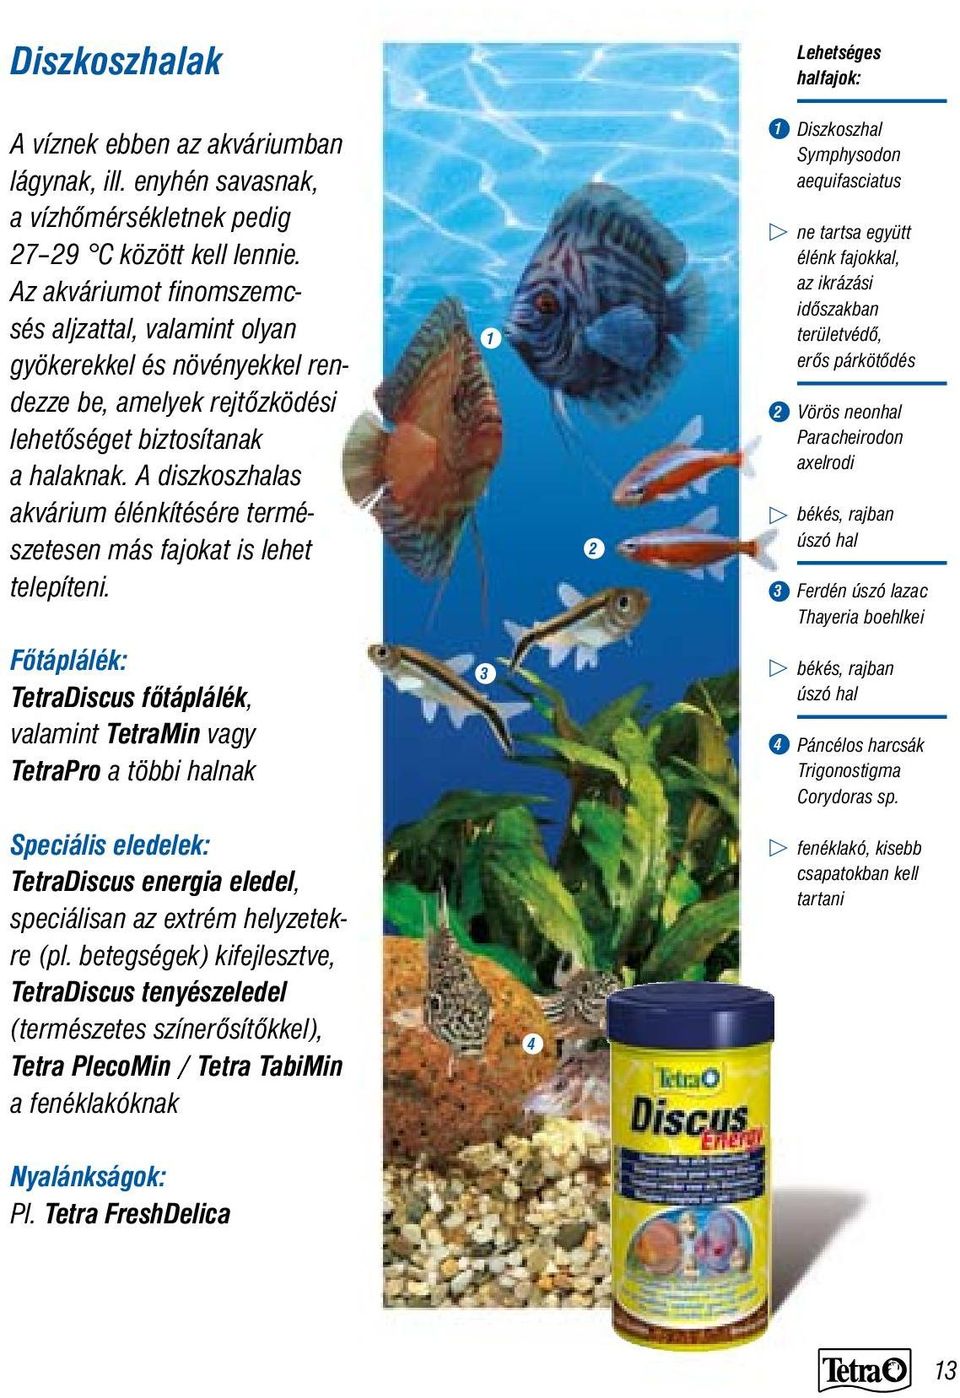 A diszkoszhalas akvárium élénkítésére természetesen más fajokat is lehet telepíteni.